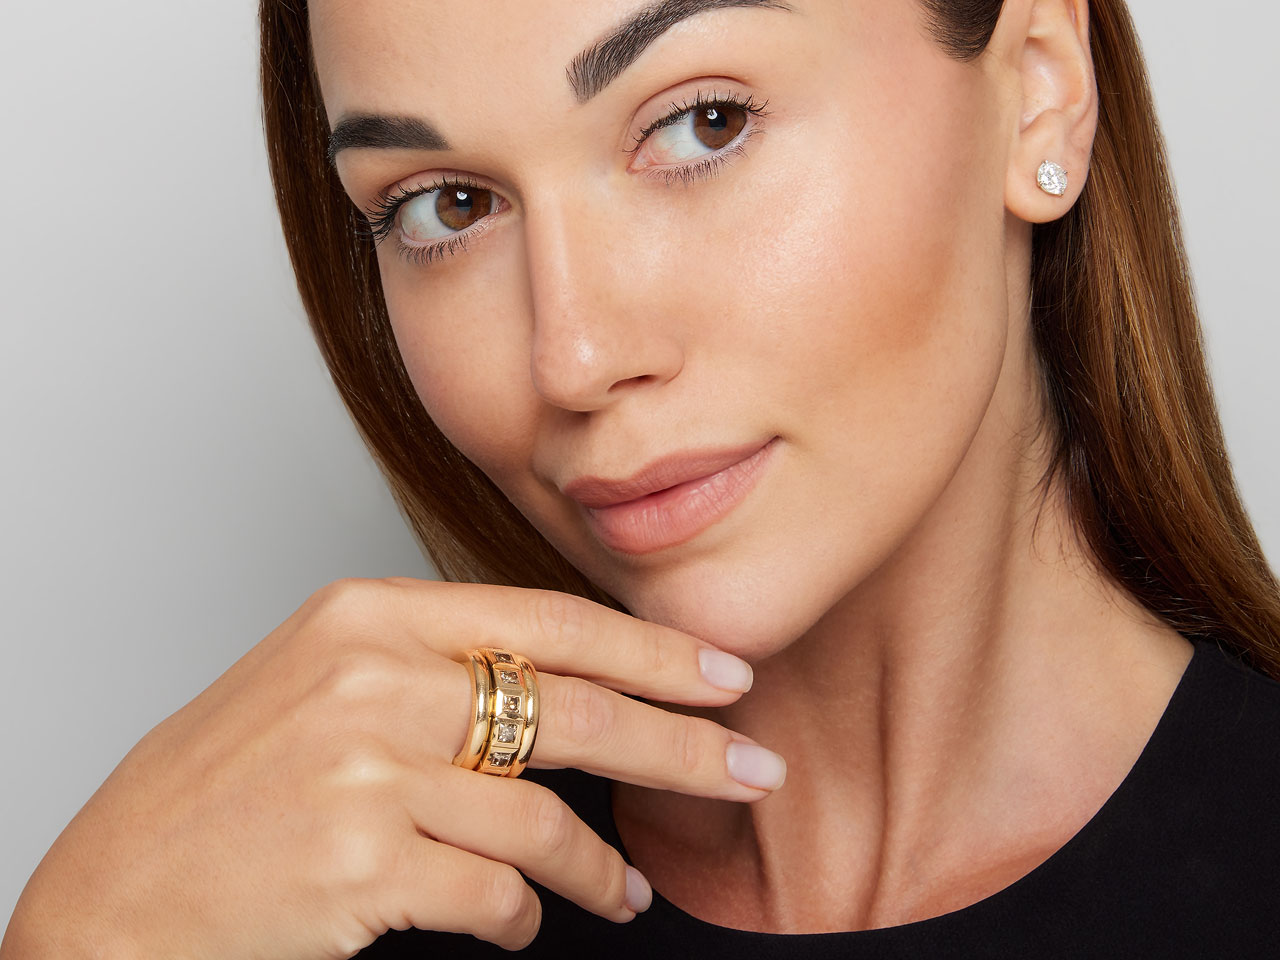 Tamara Comolli 'Curriculum Vitae' Diamond Ring in 18K Rose Gold